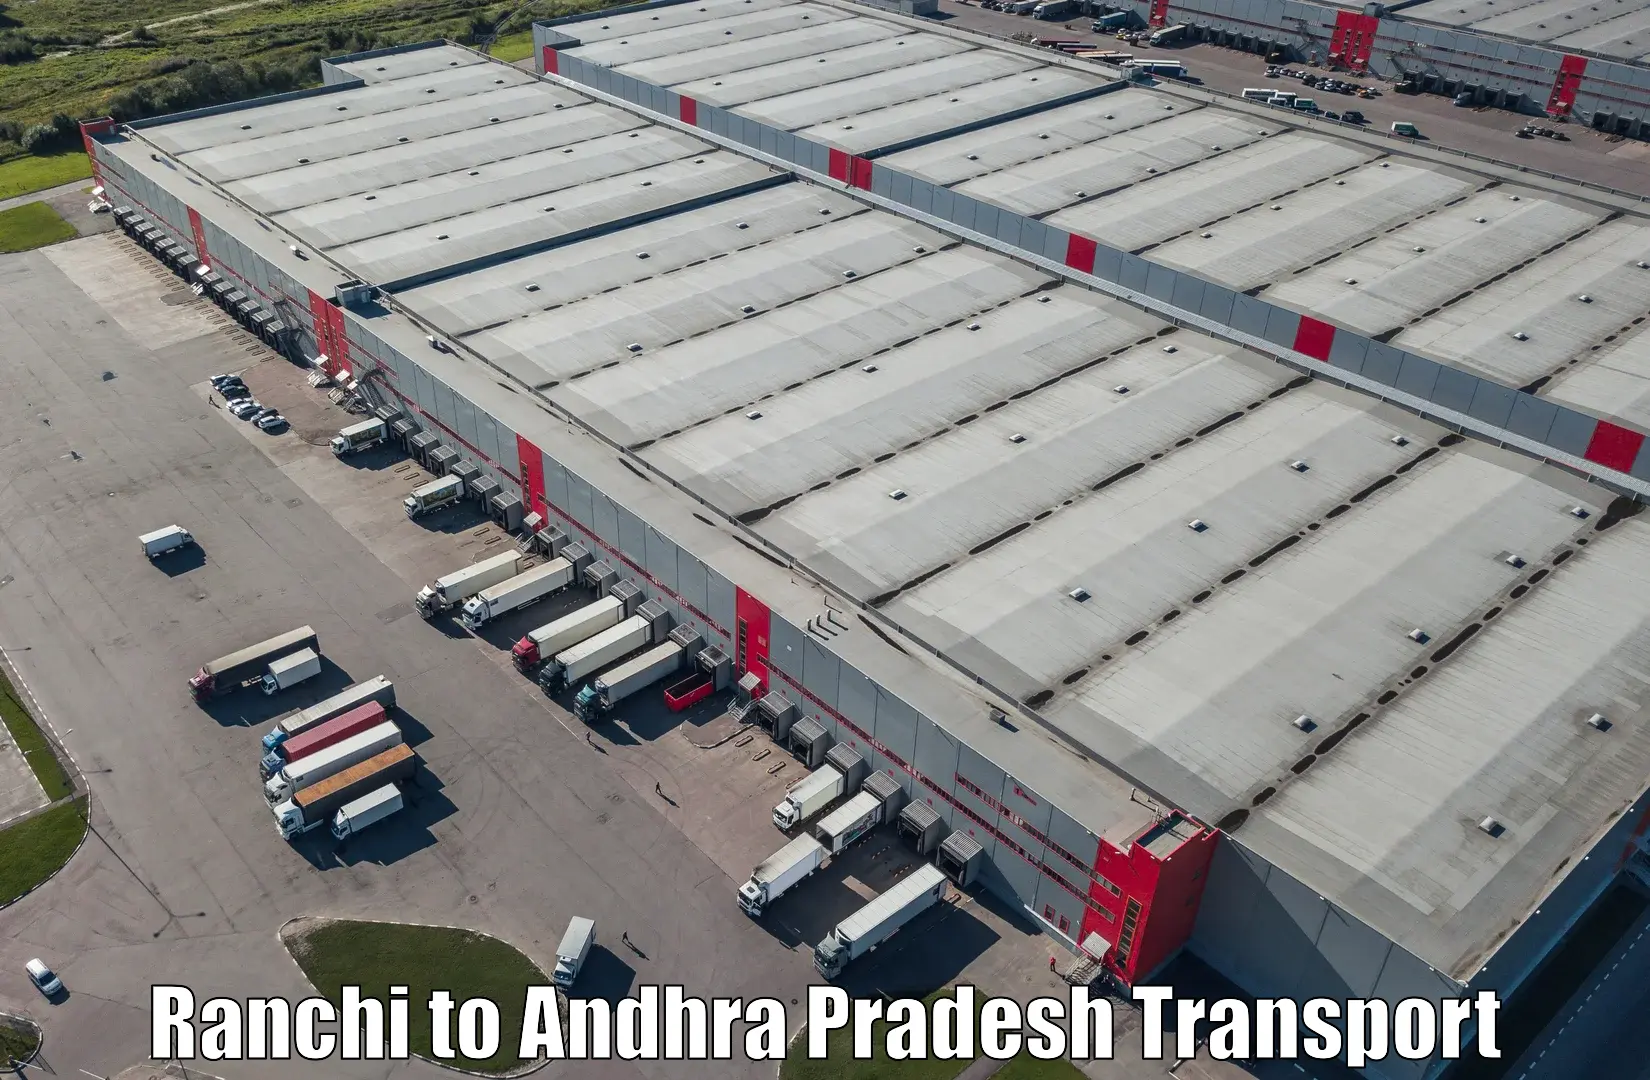 Nearest transport service Ranchi to Rajahmundry